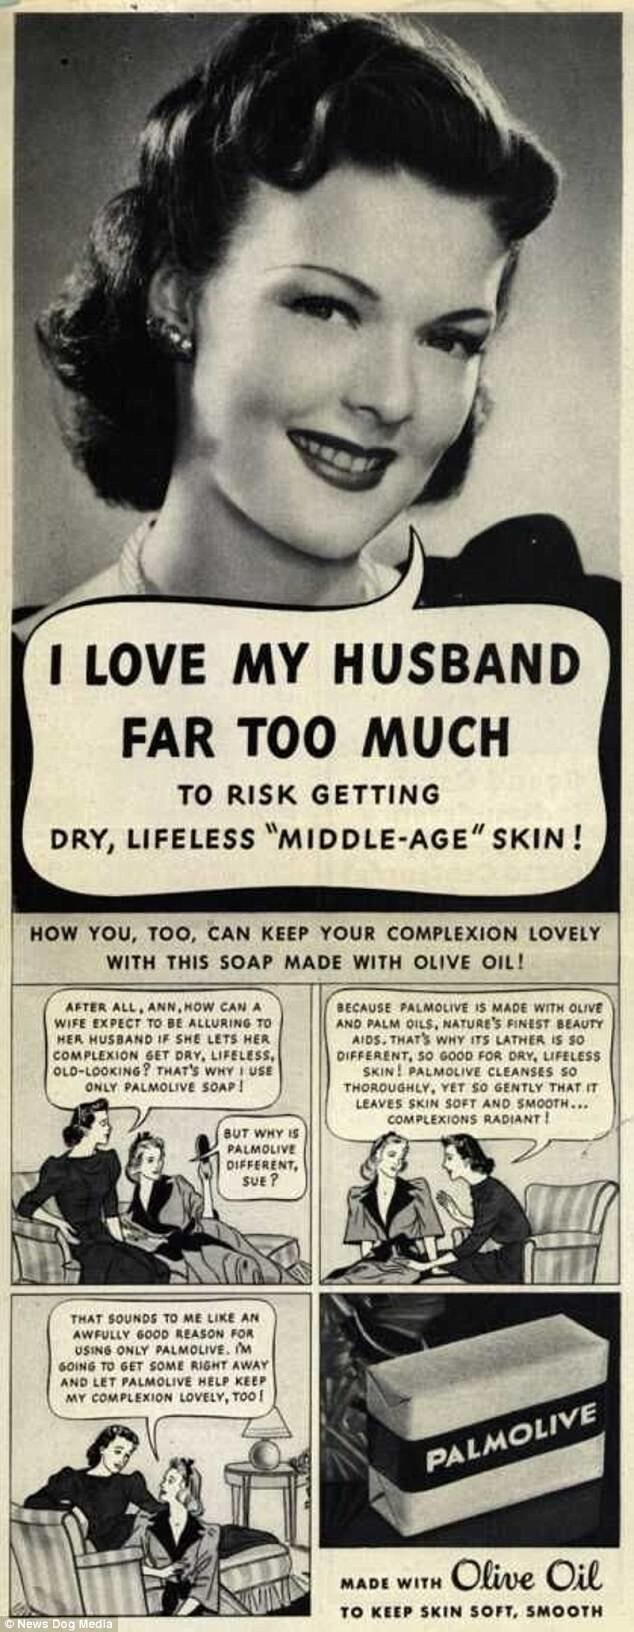 Реклама мыла Палмолив, после которого кожа не будет сухой и безжизненной - значит, браку ничто не угрожает